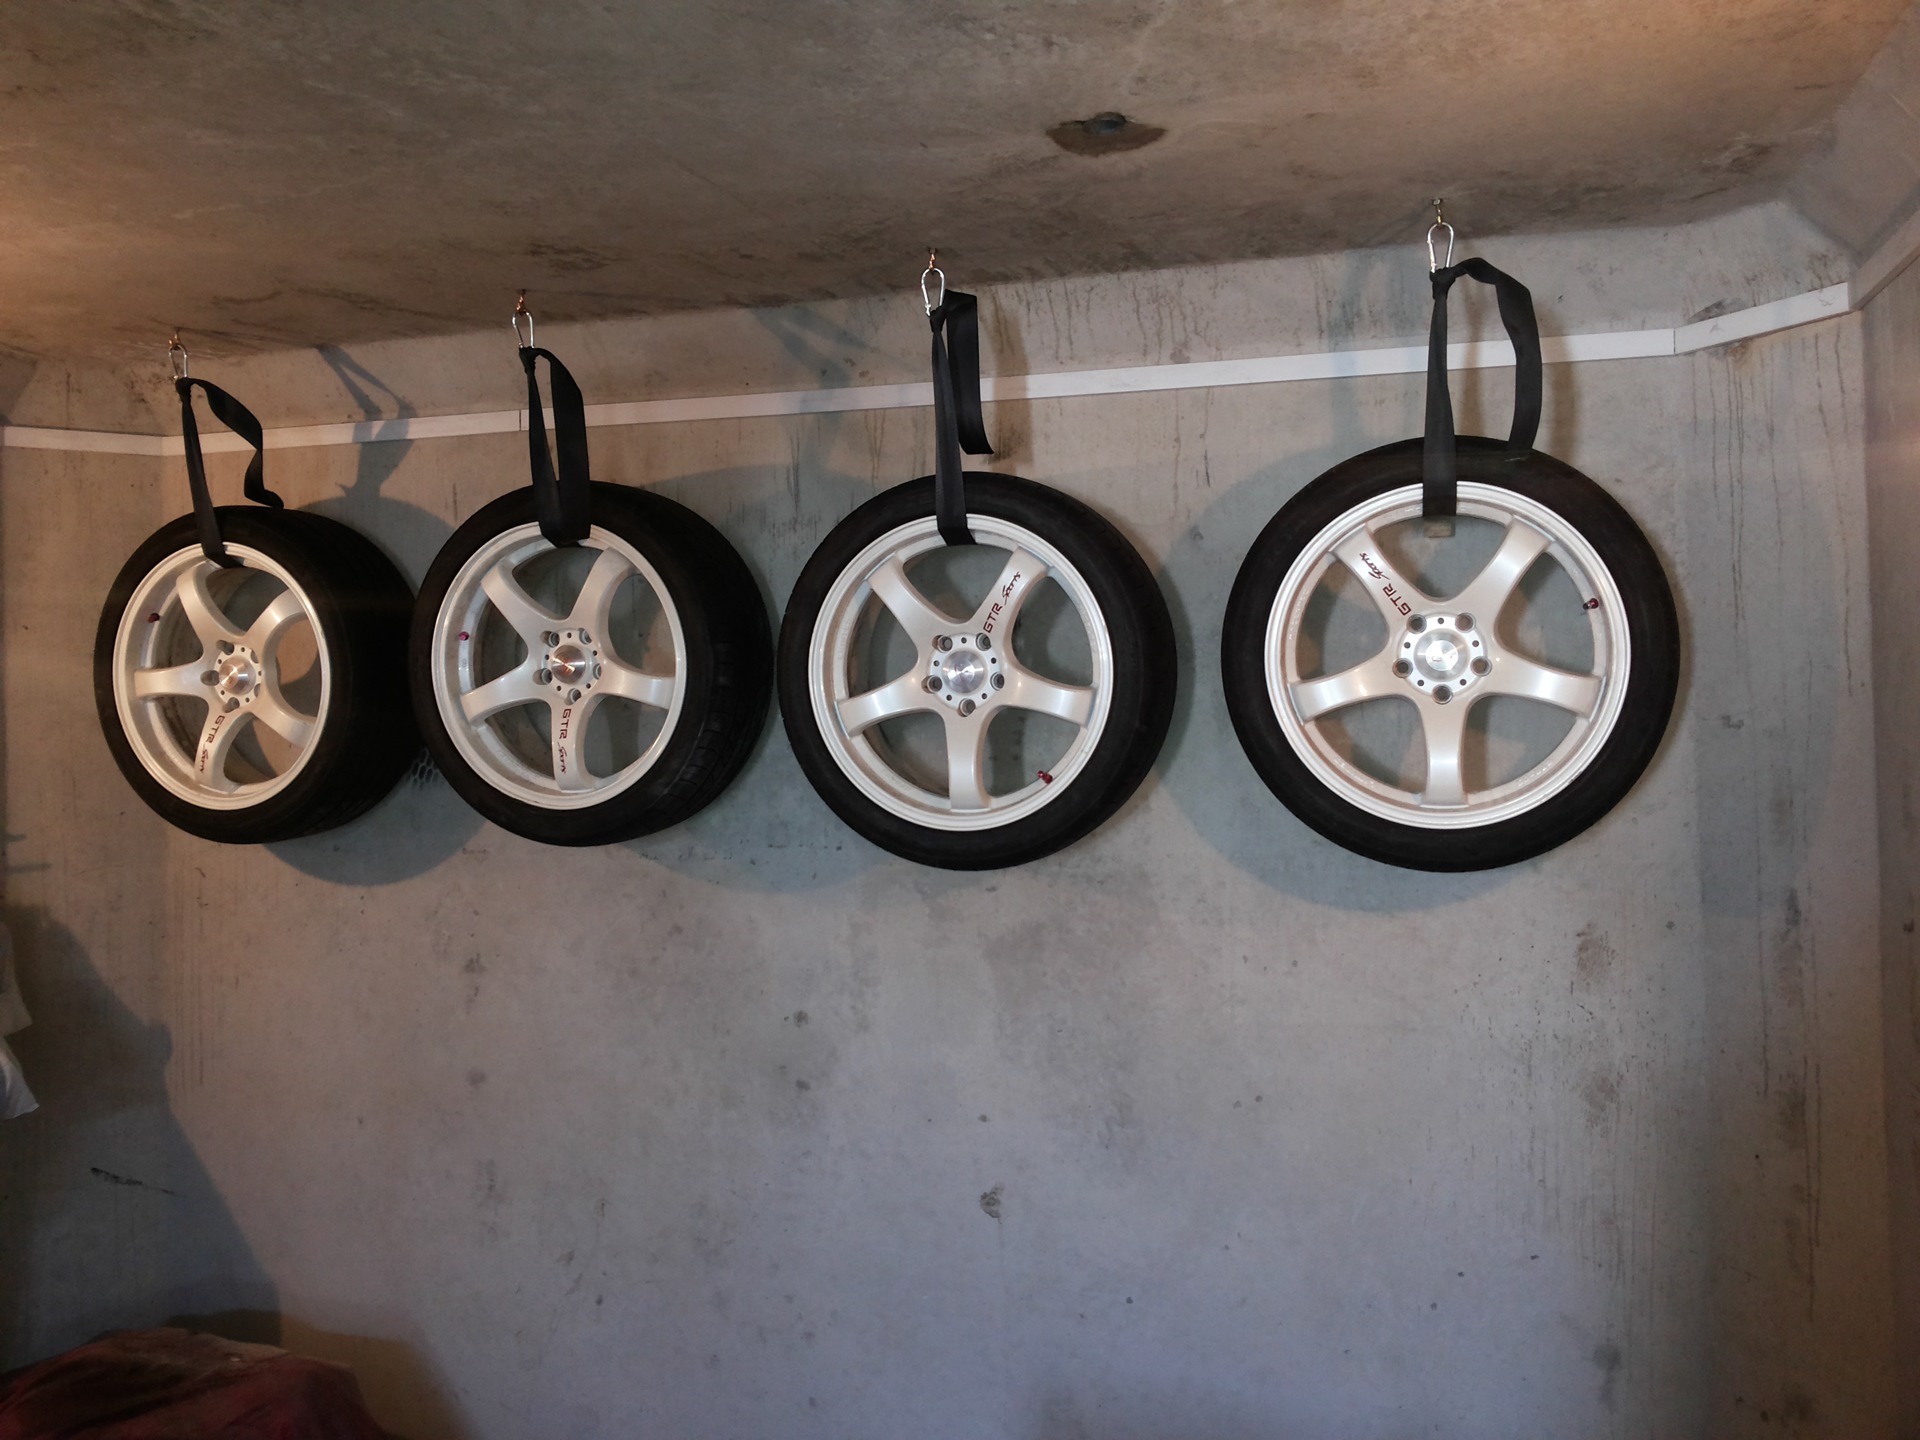 Храним колеса рф спб. Хранение колес в гараже. Приспособления для хранения колес в гараже. Полки для хранения колес в гараже. Правильное хранение колес на дисках.